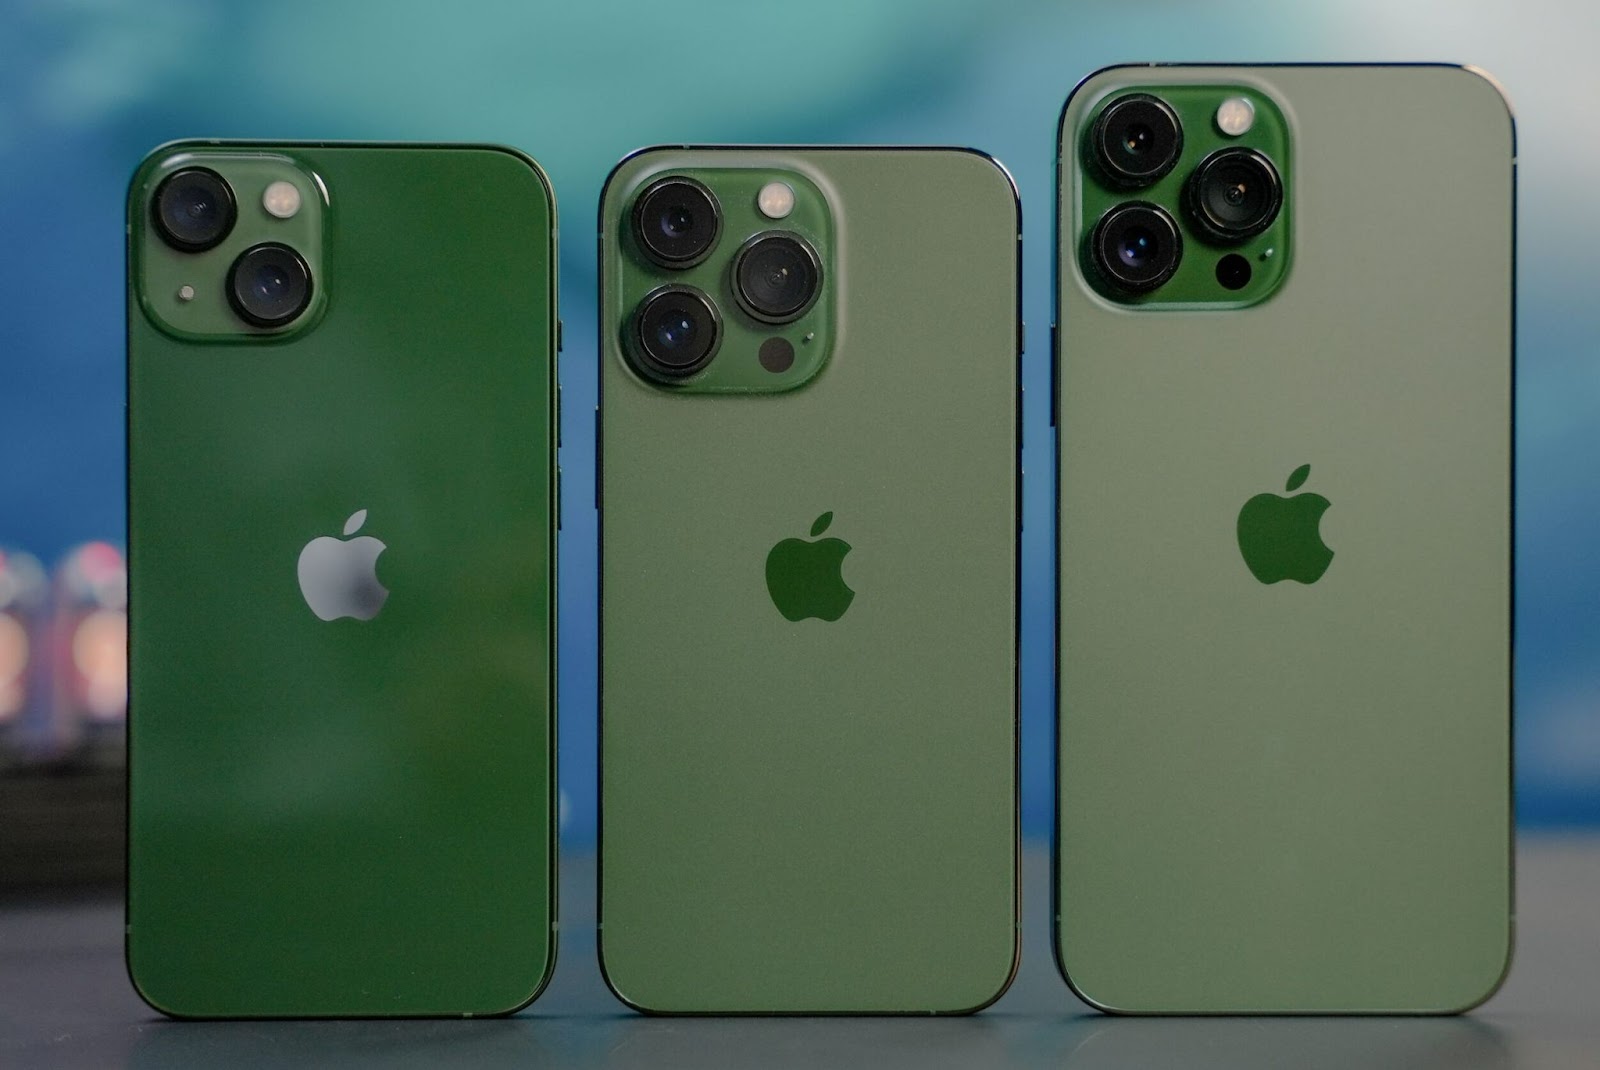 Không chỉ thêm sự tươi mát cho sản phẩm, màu xanh lá còn mang đến sự hiện đại và đẳng cấp cho iPhone